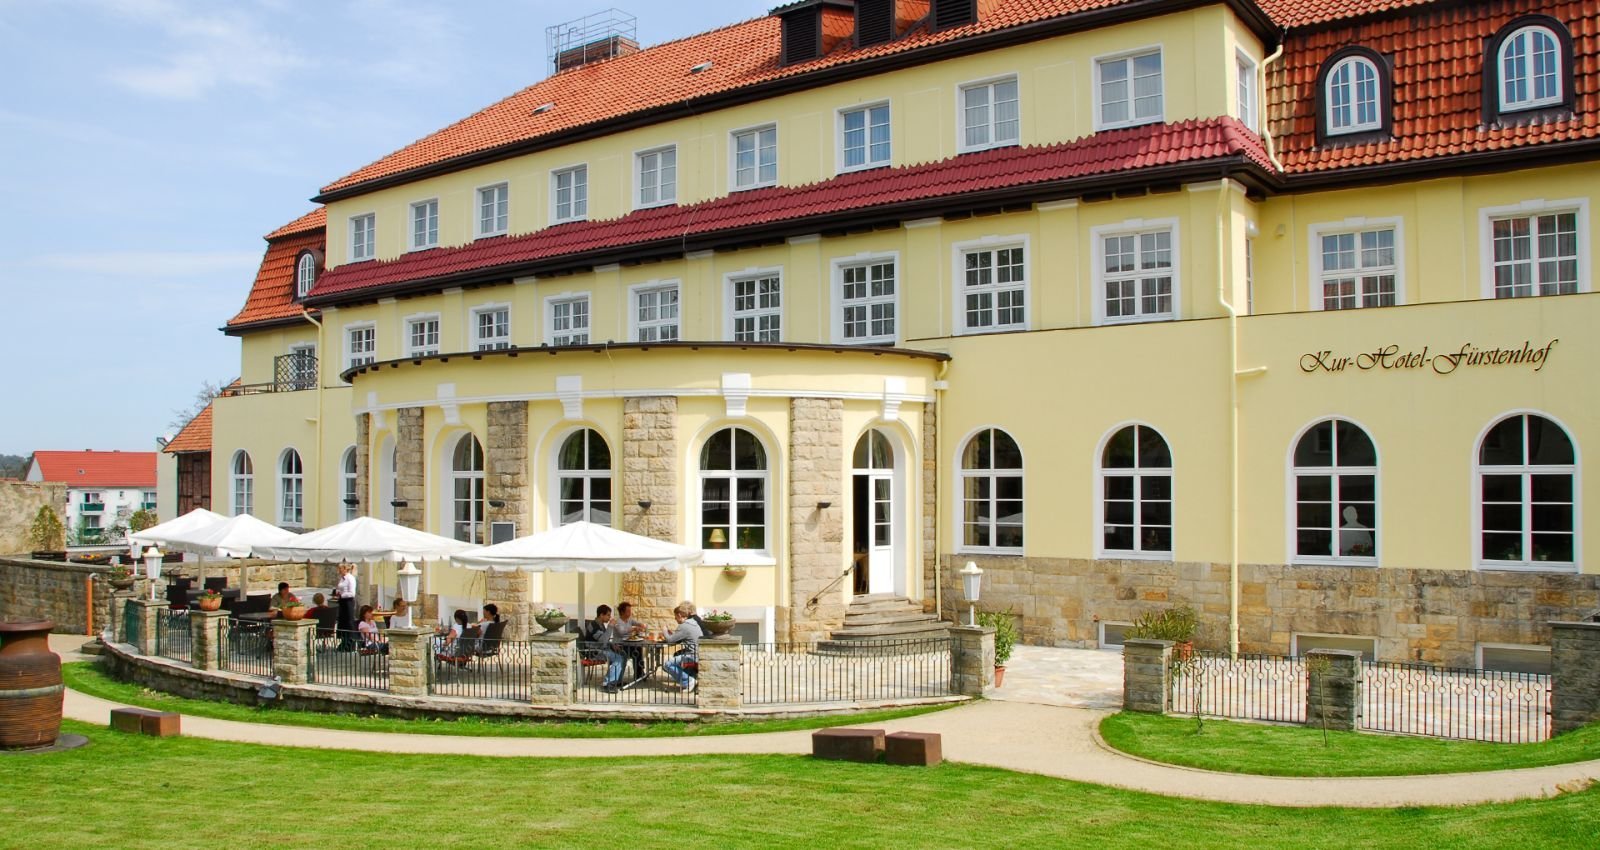 Wandern – Erlebnis im Harz (2 Nächte) – Kurhotel Fürstenhof (3.5 Sterne) in Blankenburg, Sachsen-Anhalt inkl. Halbpension